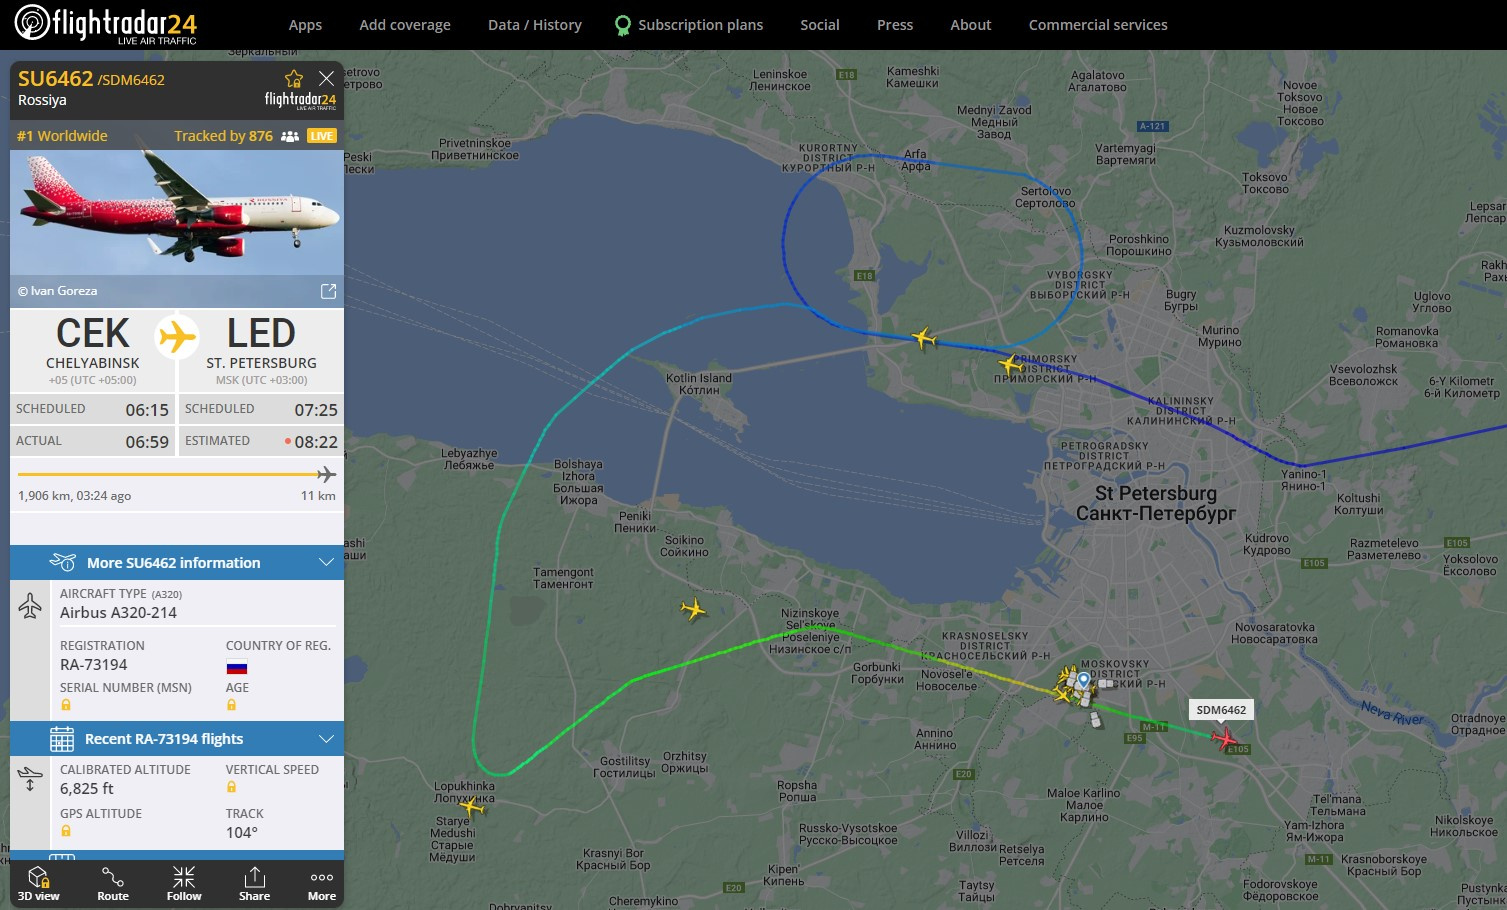 Самолет из Челябинска должен был приземлиться в 07:25, а ожидается в 08:35